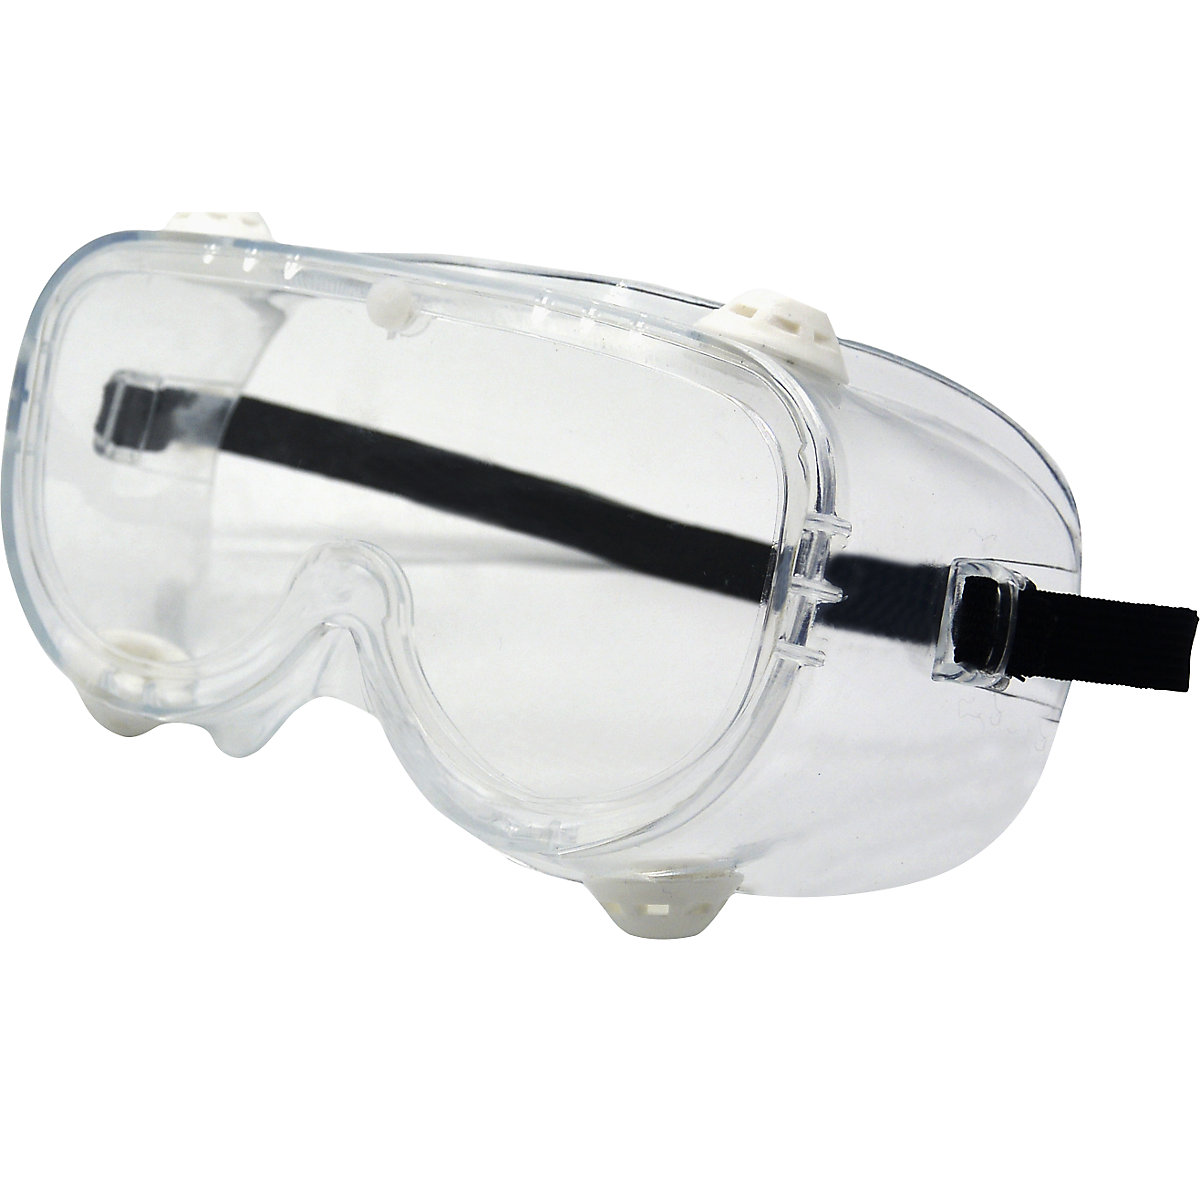 Ochelari de protecție cu vedere completă EN166 (amb. 10 sau 200 buc.)